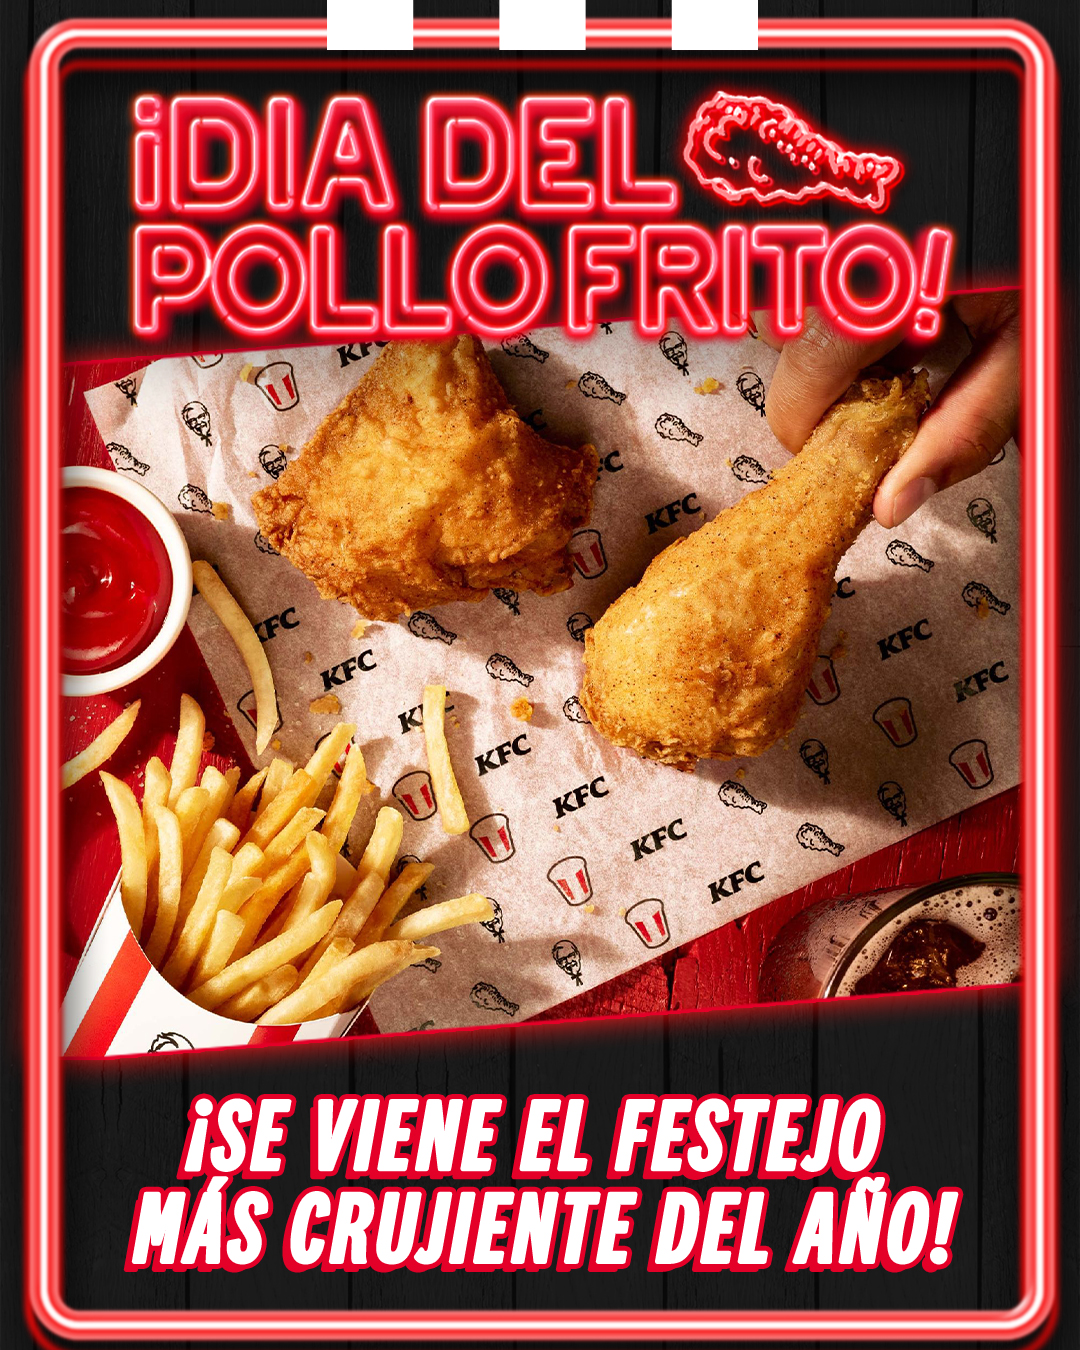 KFC celebra el día del pollo frito con sorpresas y descuentos - la  fatfluencer